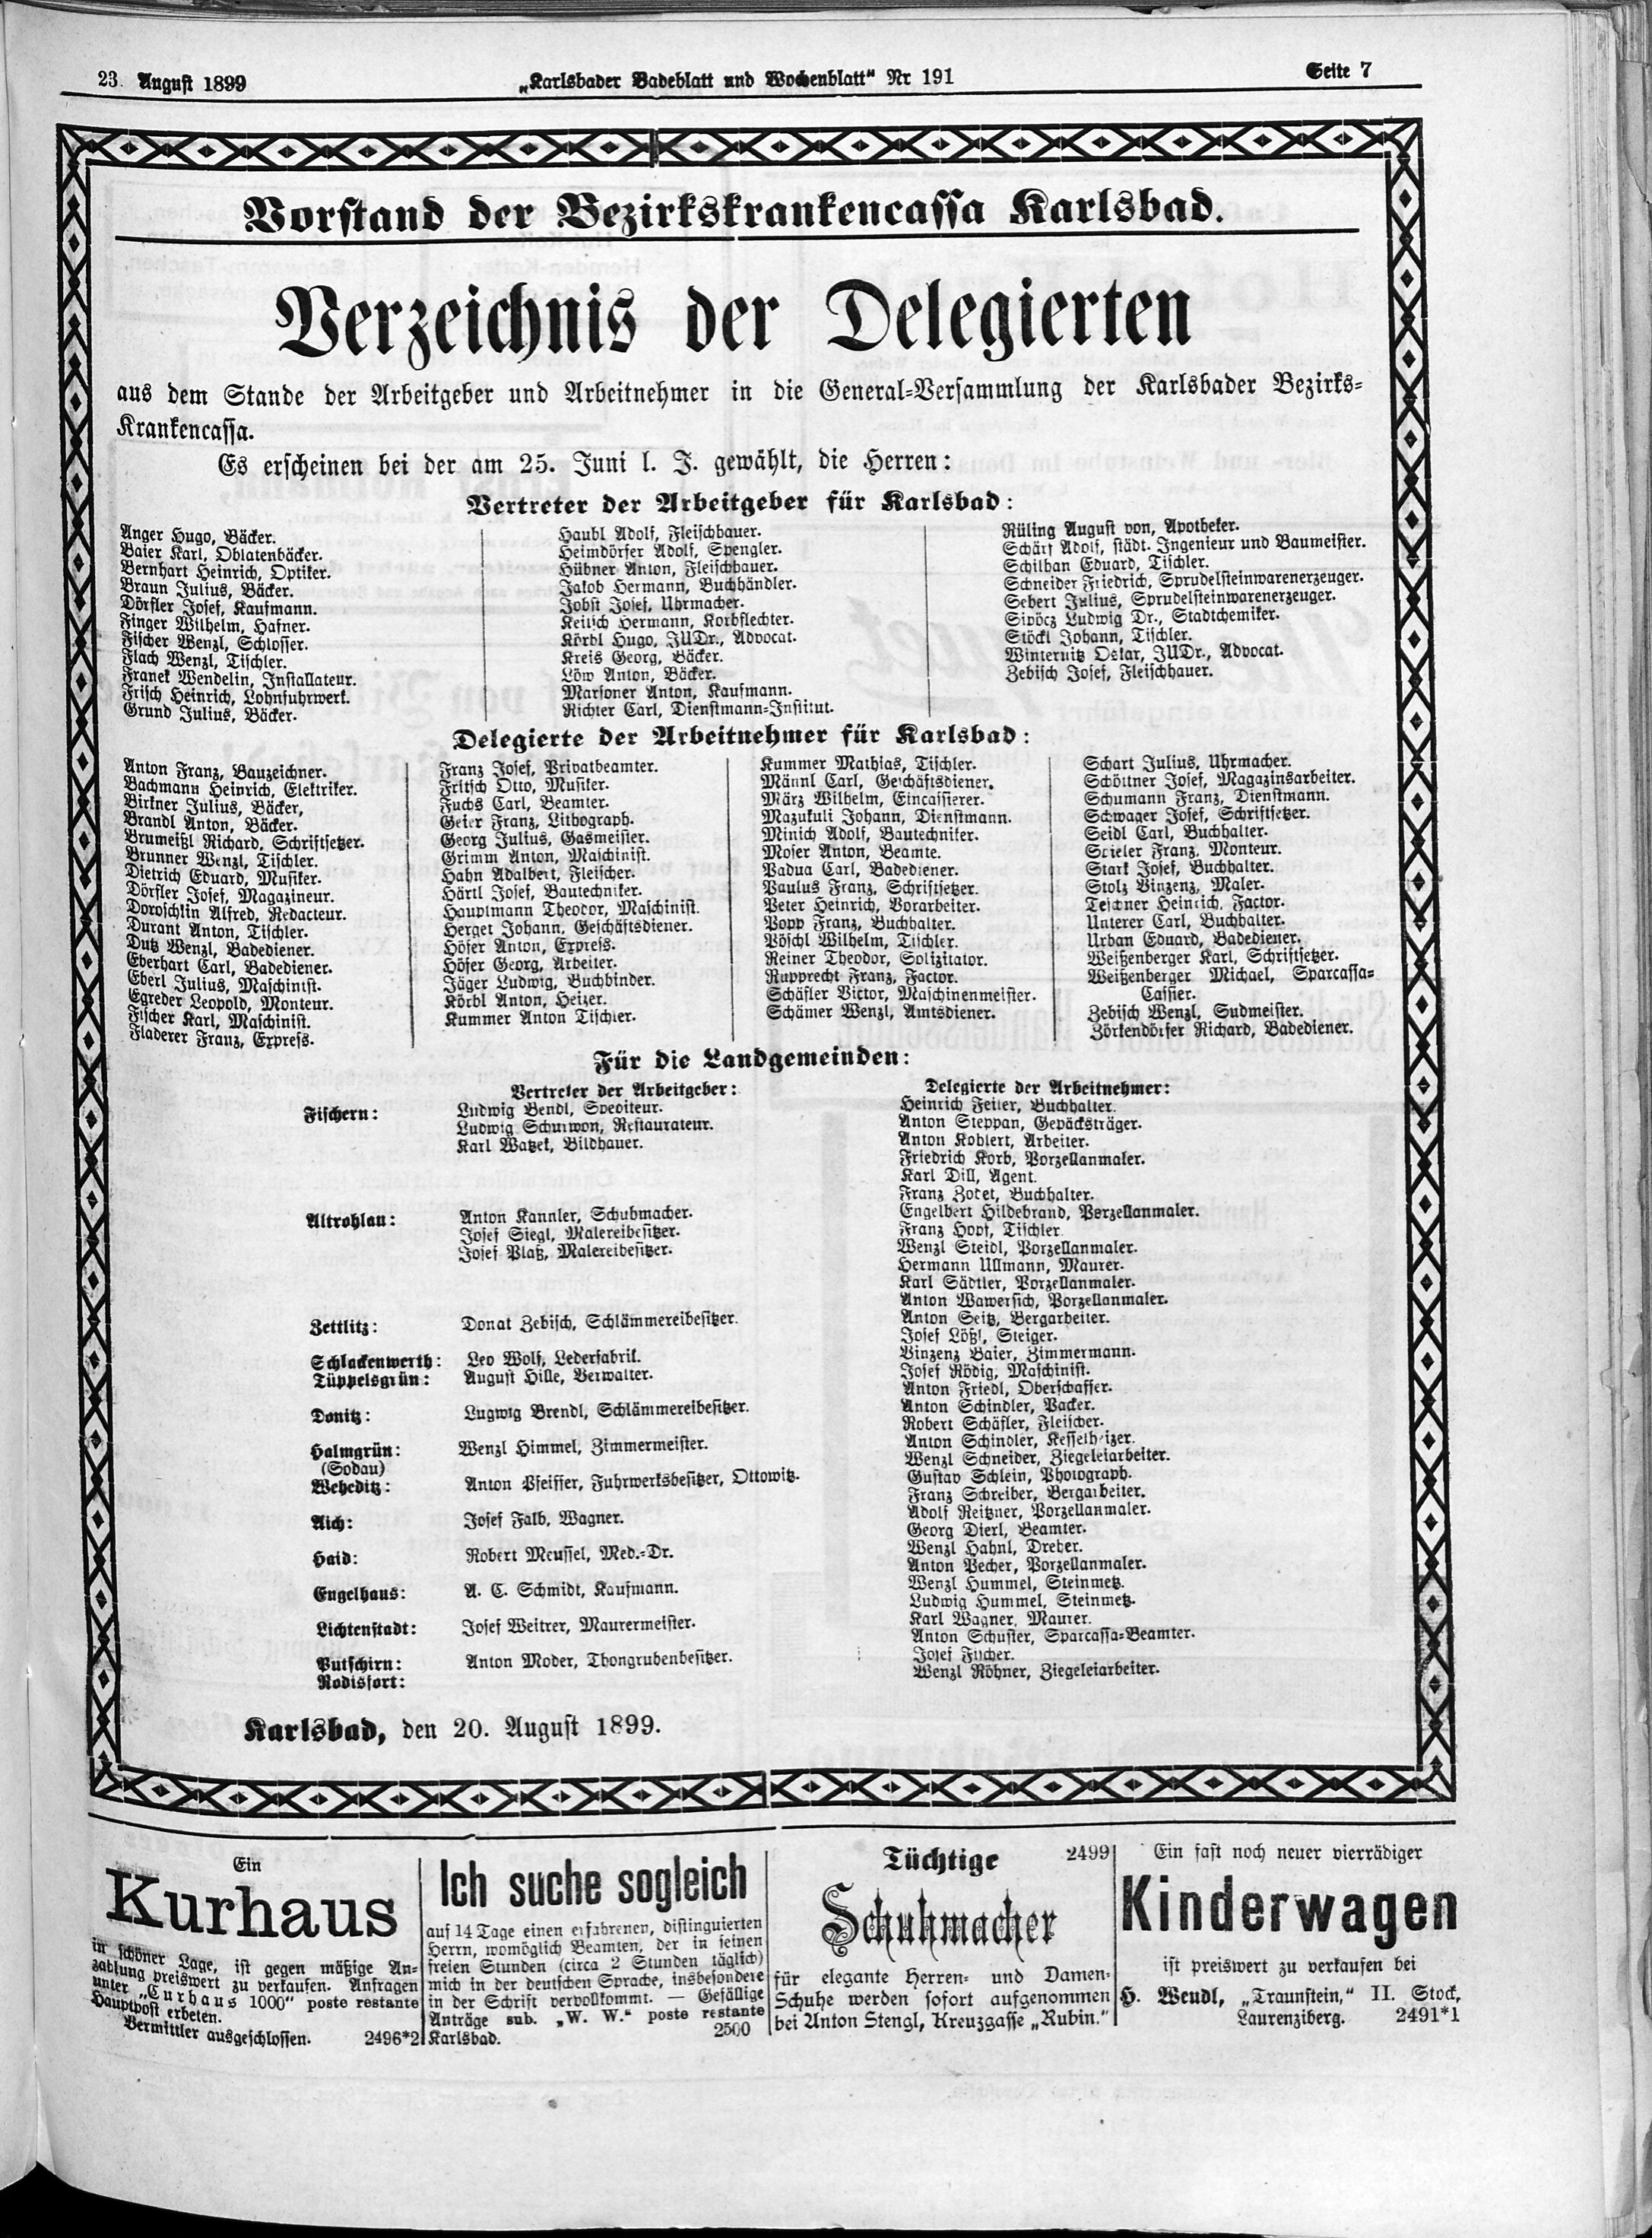 11. karlsbader-badeblatt-1899-08-23-n191_2705